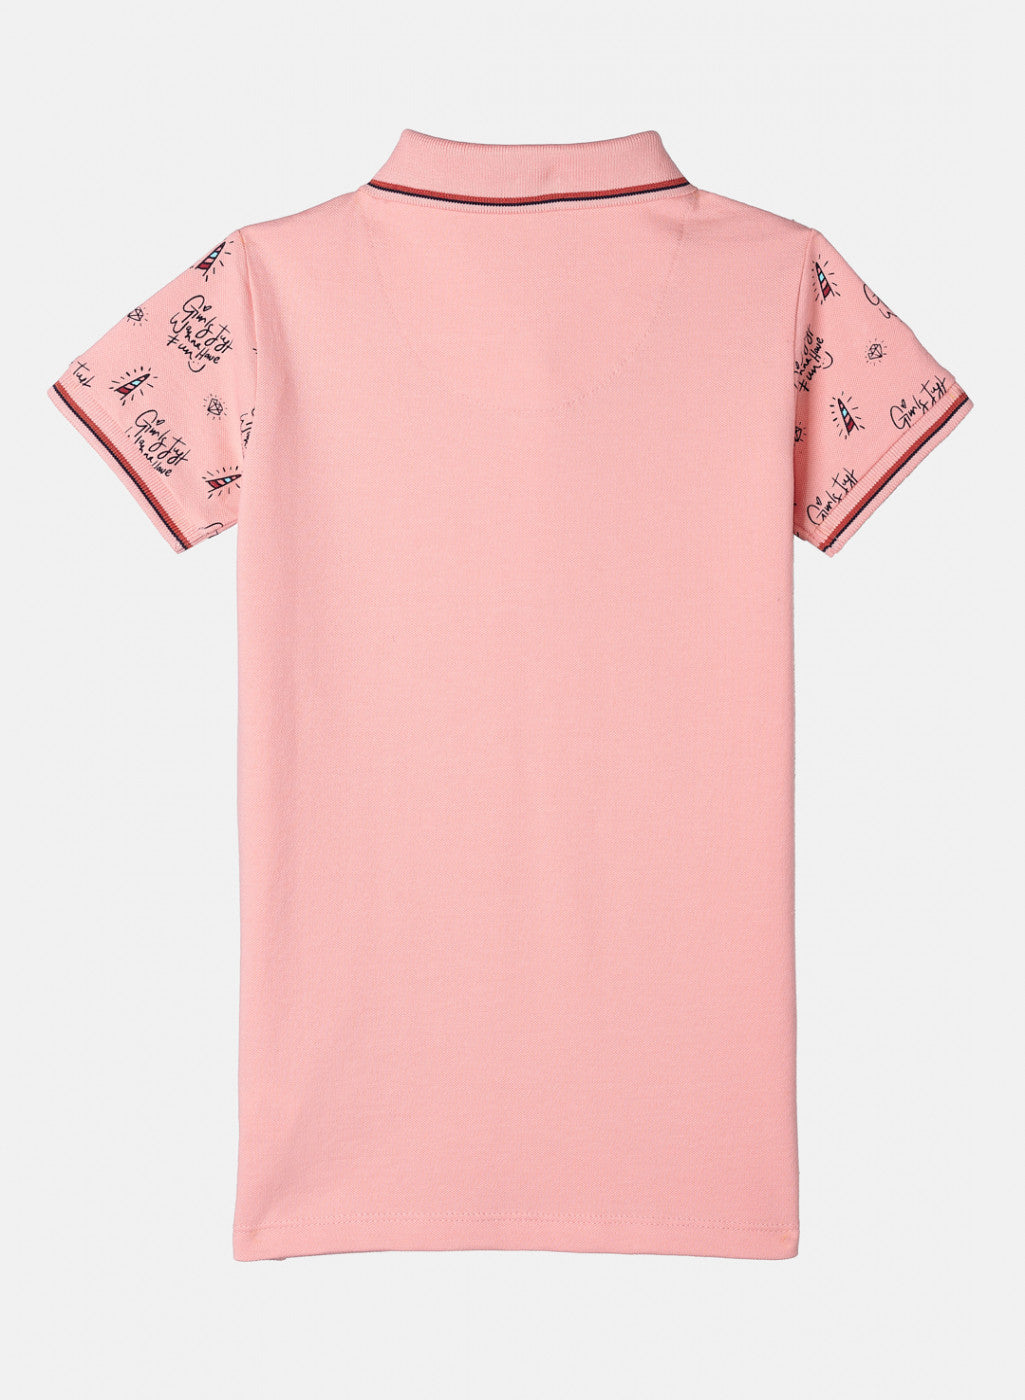 Girls Baby Pink Printed T-Shirt